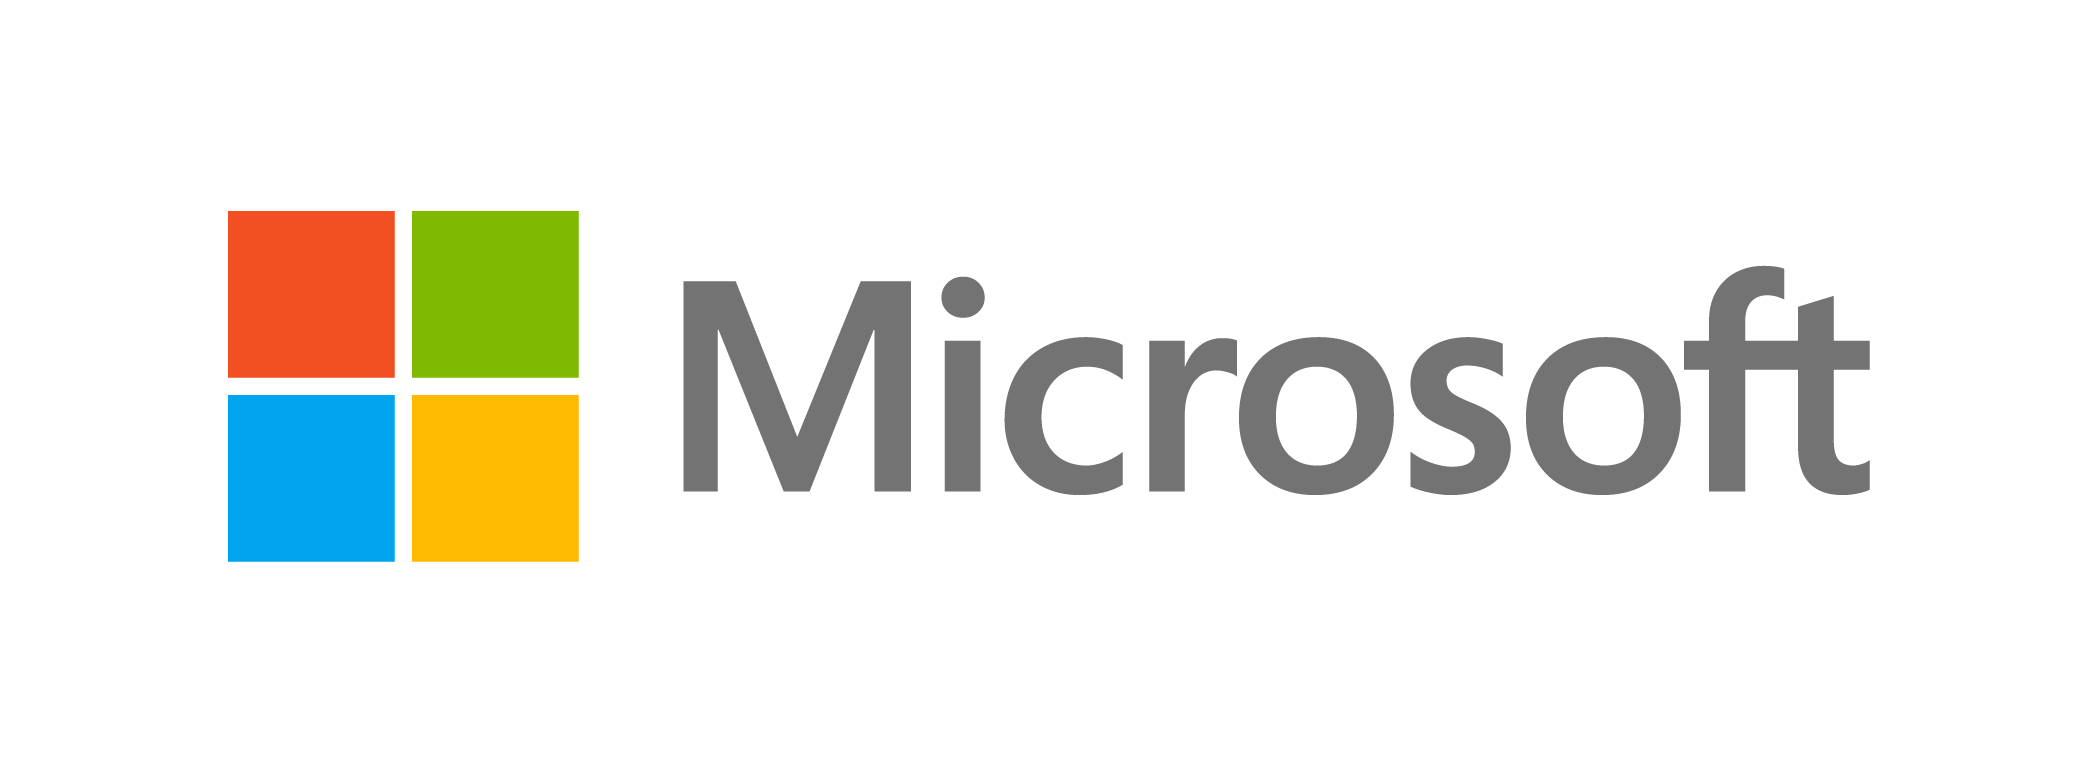 Microsoft publica lucro de US$ 5,24 bilhões e registra receita recorde